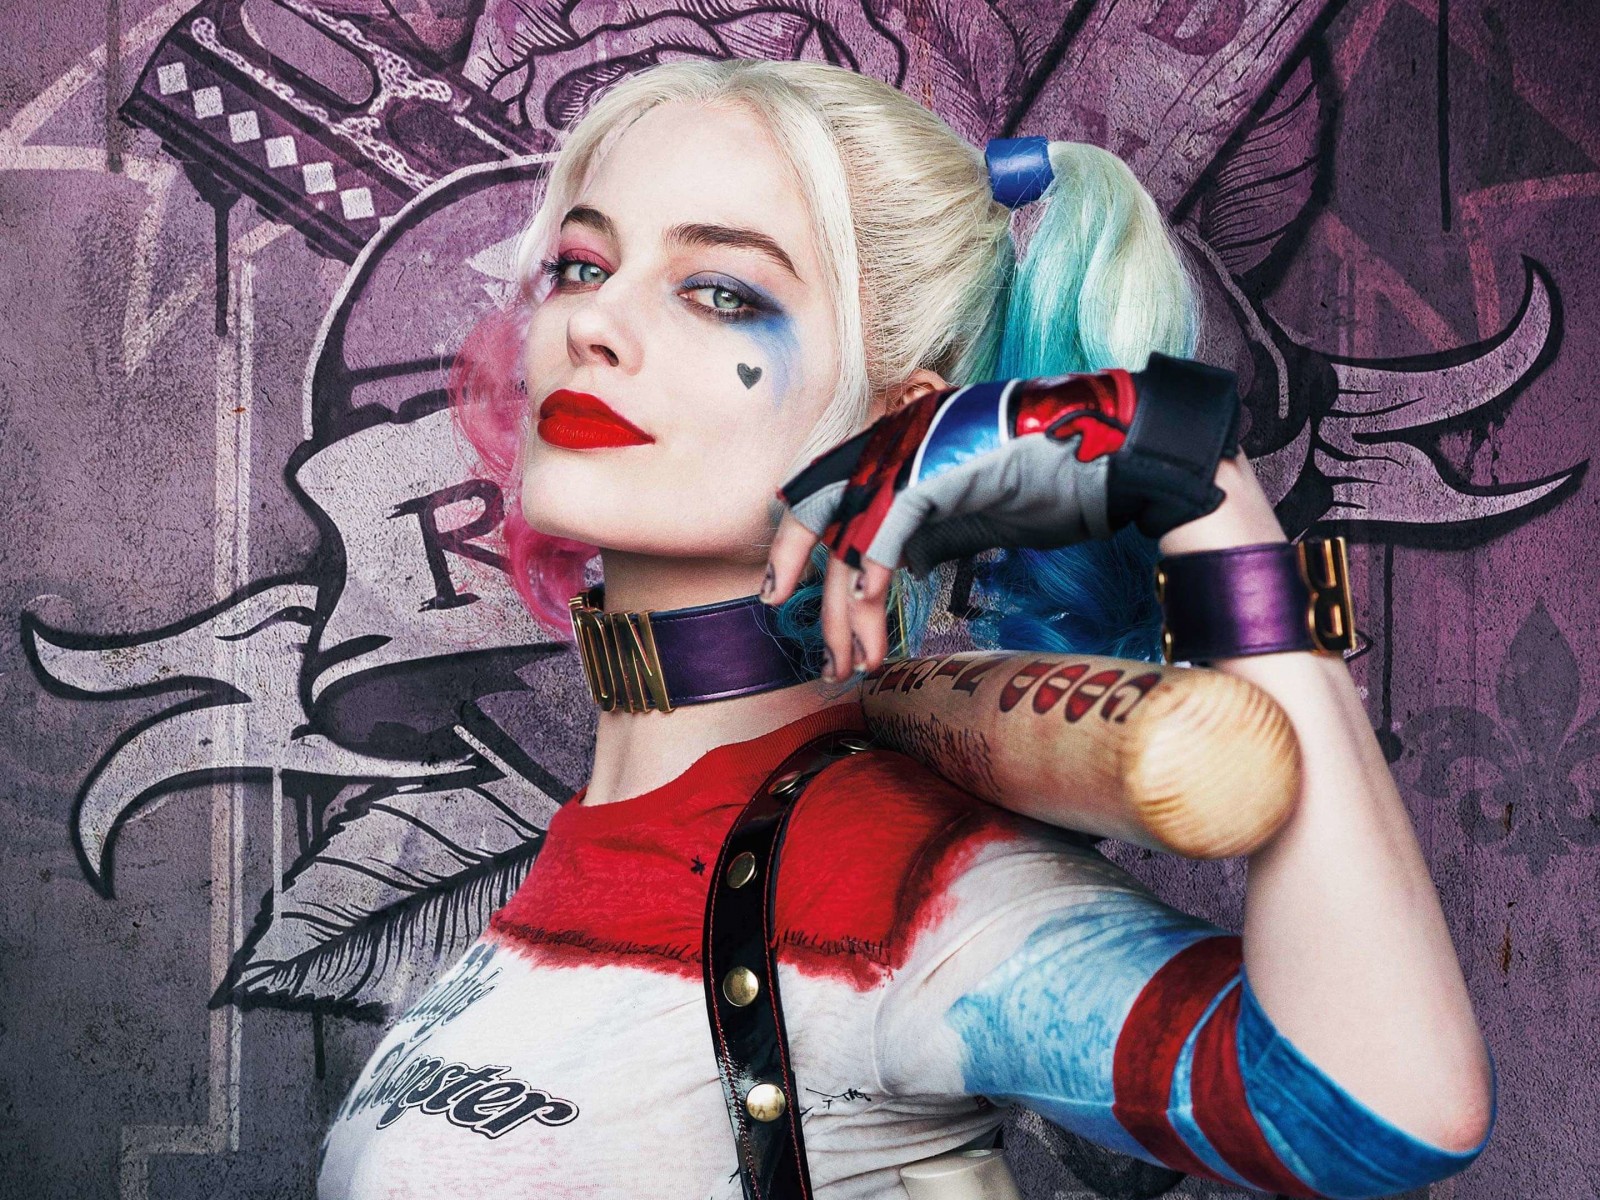 Harley Quinn - Suicide Squad Wallpaper for Desktop 1600x1200